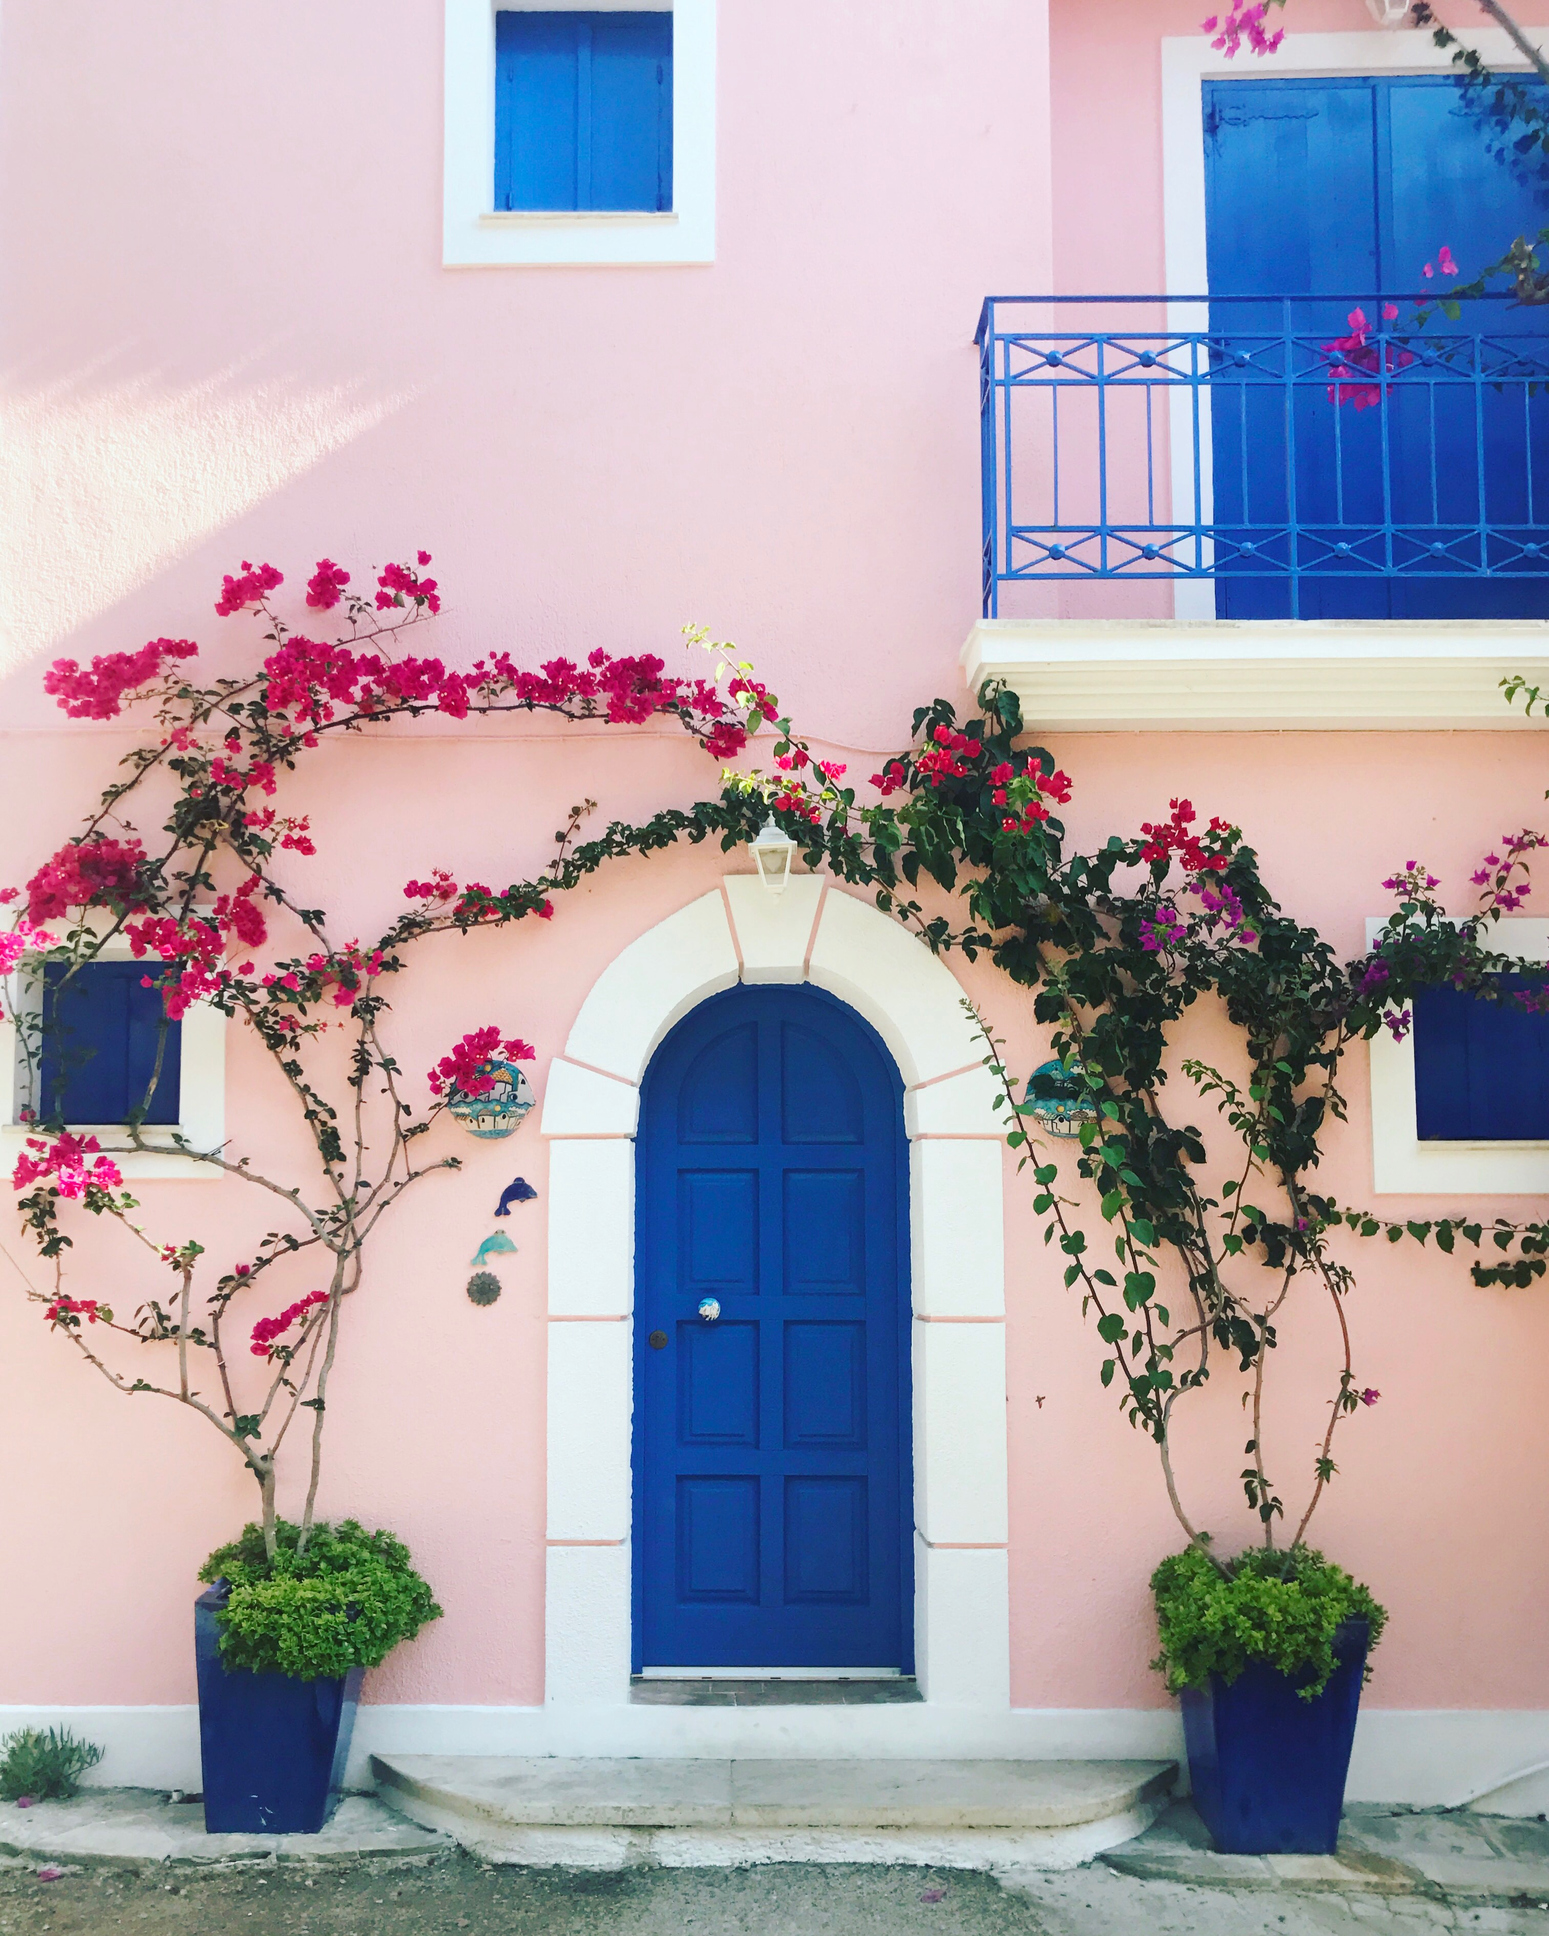 Fachada de casa com janelas e porta azul escuro, com bordas de cor branca e paredes rosa claro.